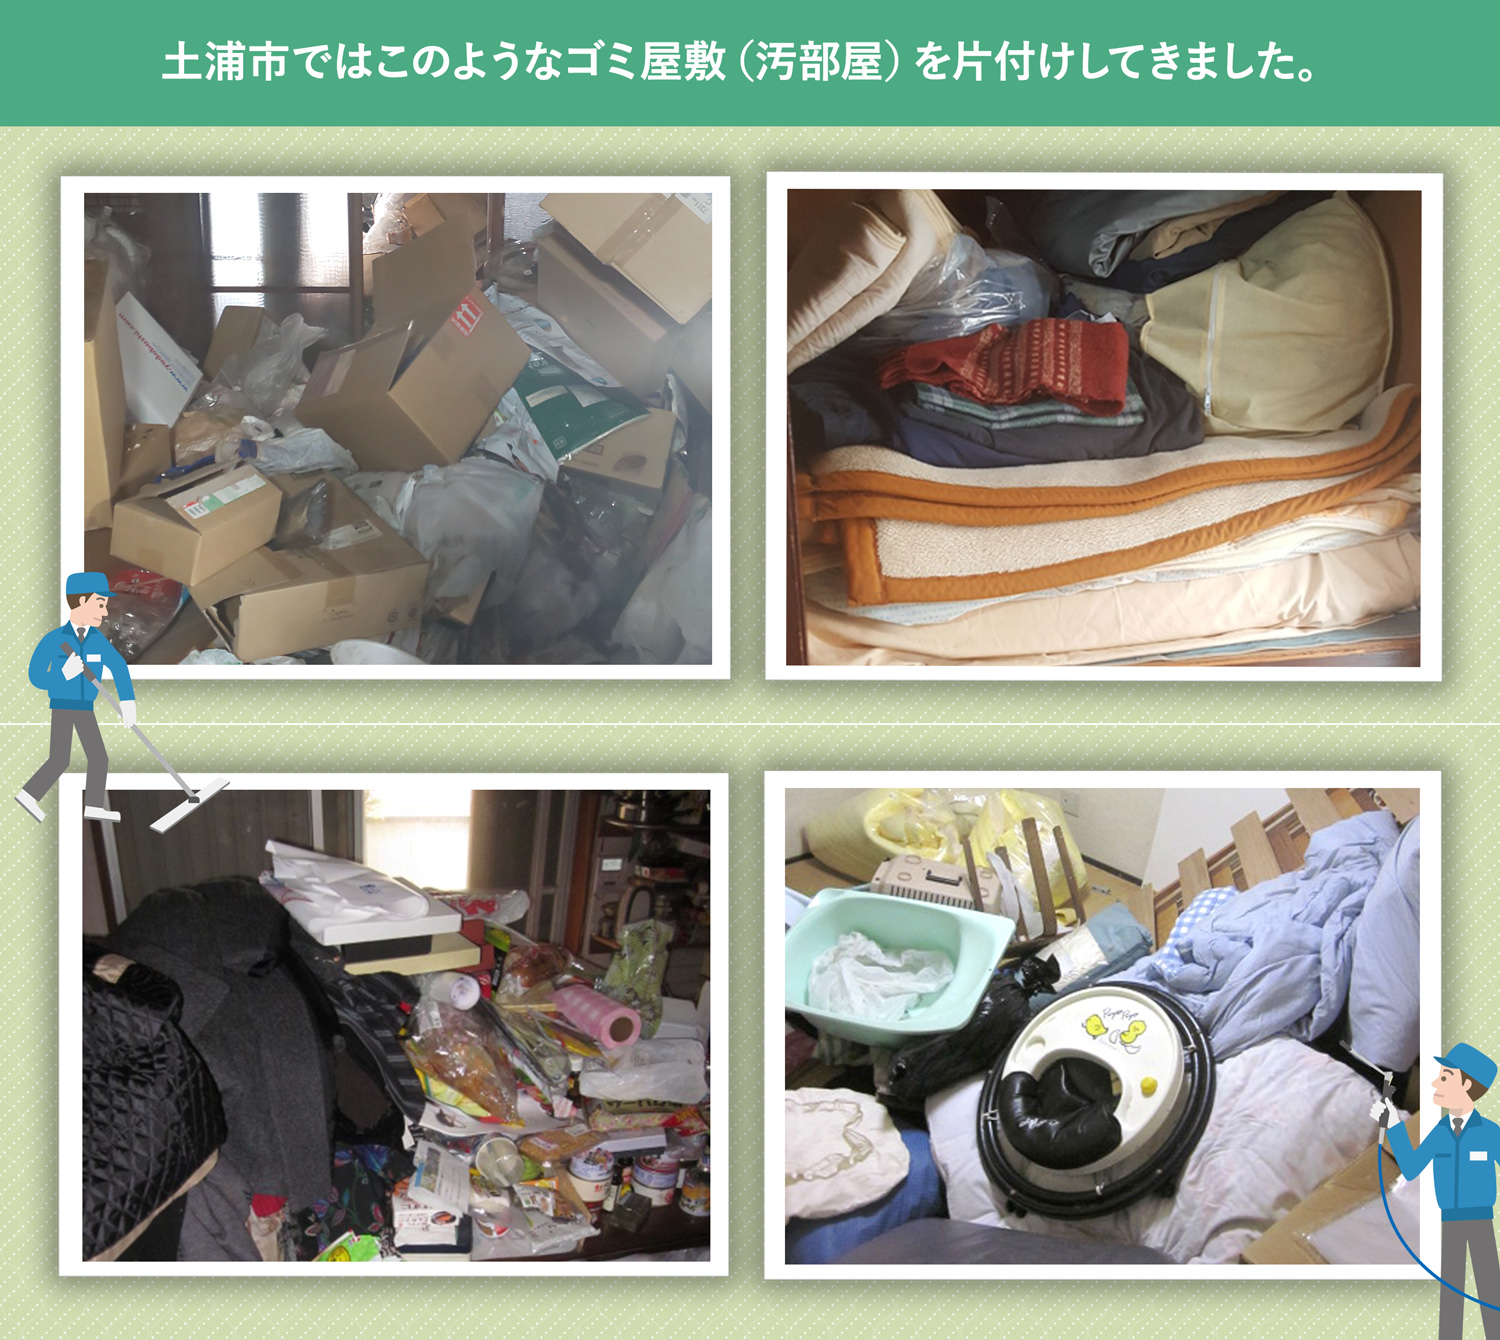 土浦市で行ったで行ったごみ屋敷・汚部屋の片付けの一例